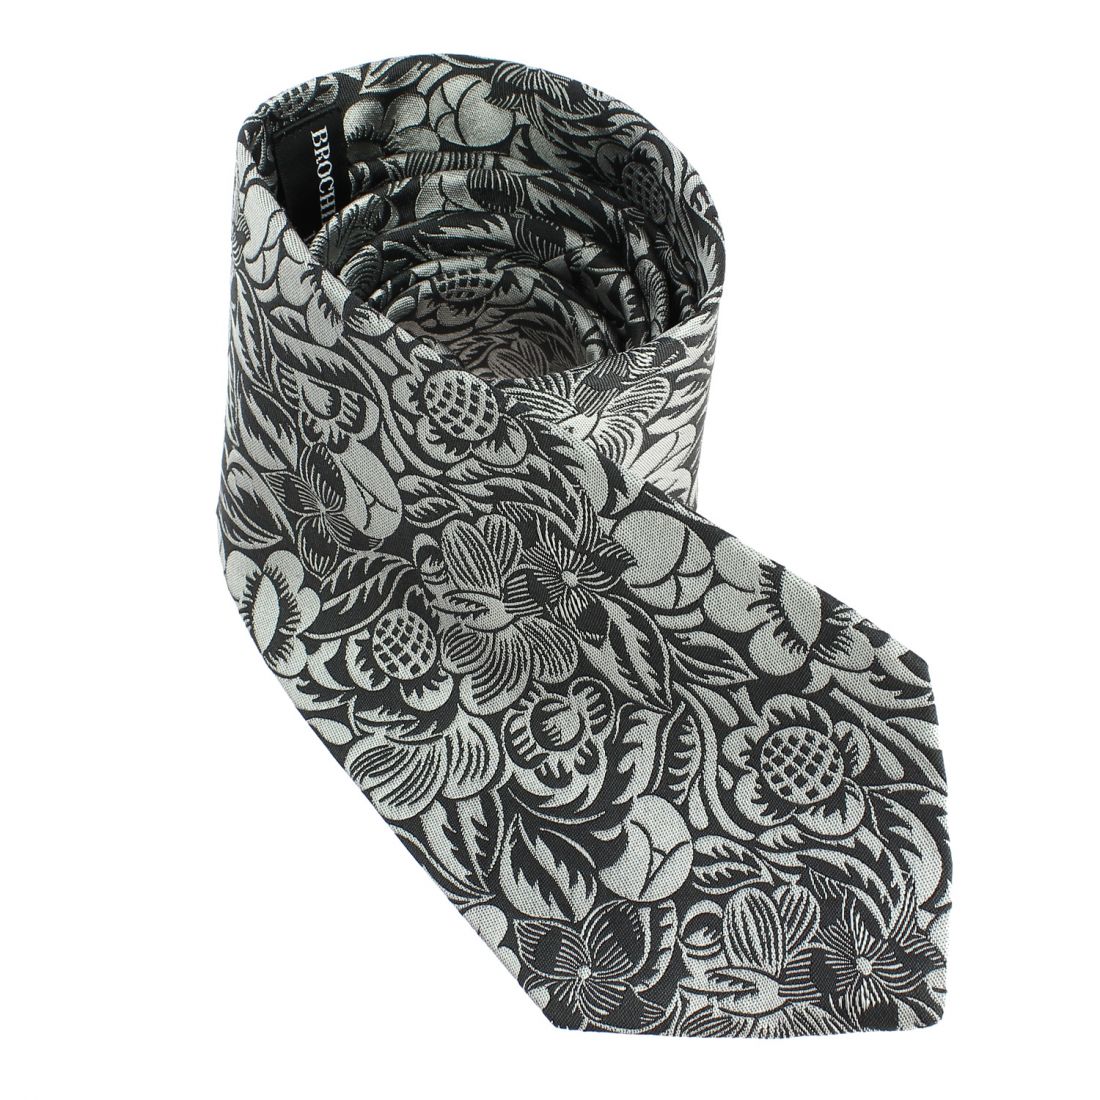 Cravate en soie, Dufy Fleurs gris argent Brochier Soieries 1890